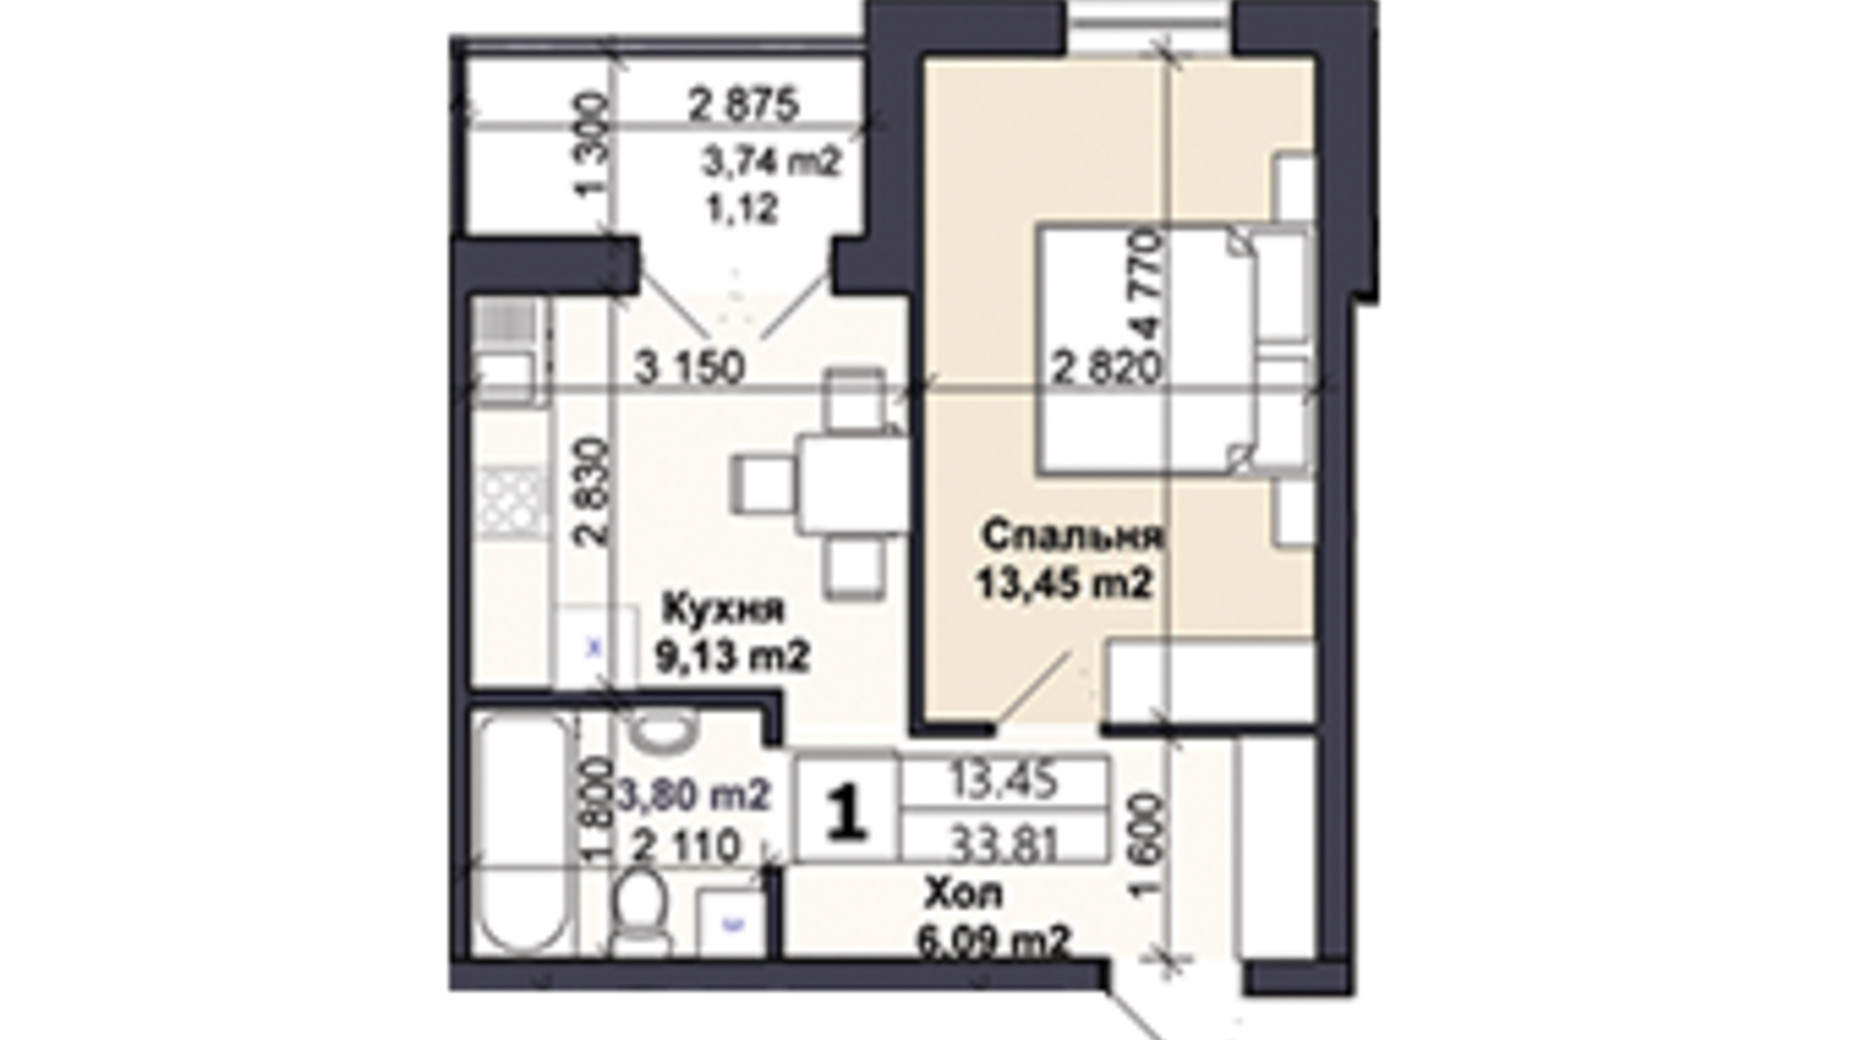 Планировка 1-комнатной квартиры в ЖК Саме той 33.81 м², фото 623281